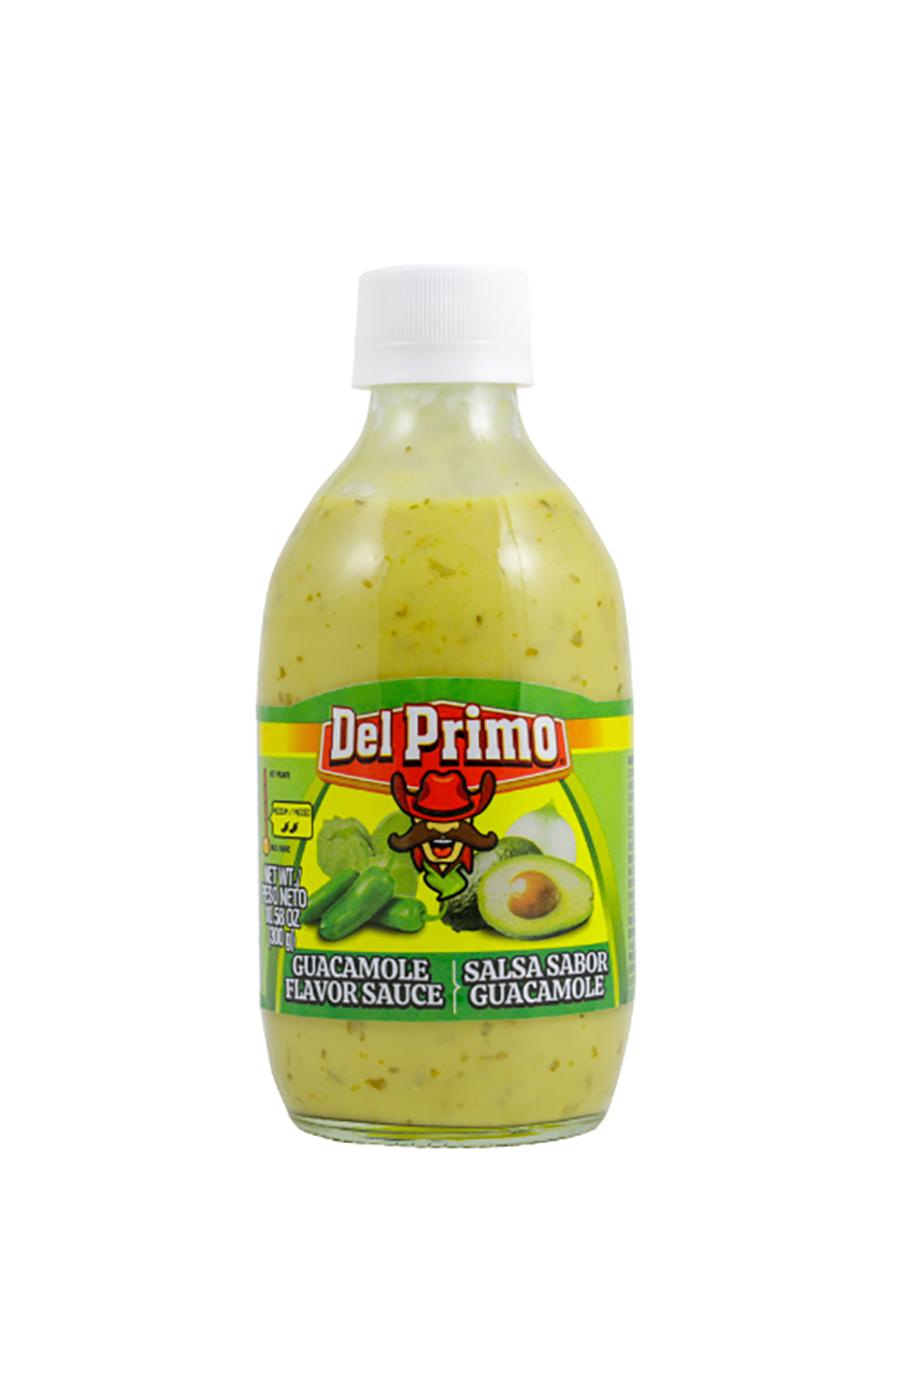 Del Primo Salsa Sabor Guacamole Flavor Sauce; image 1 of 3